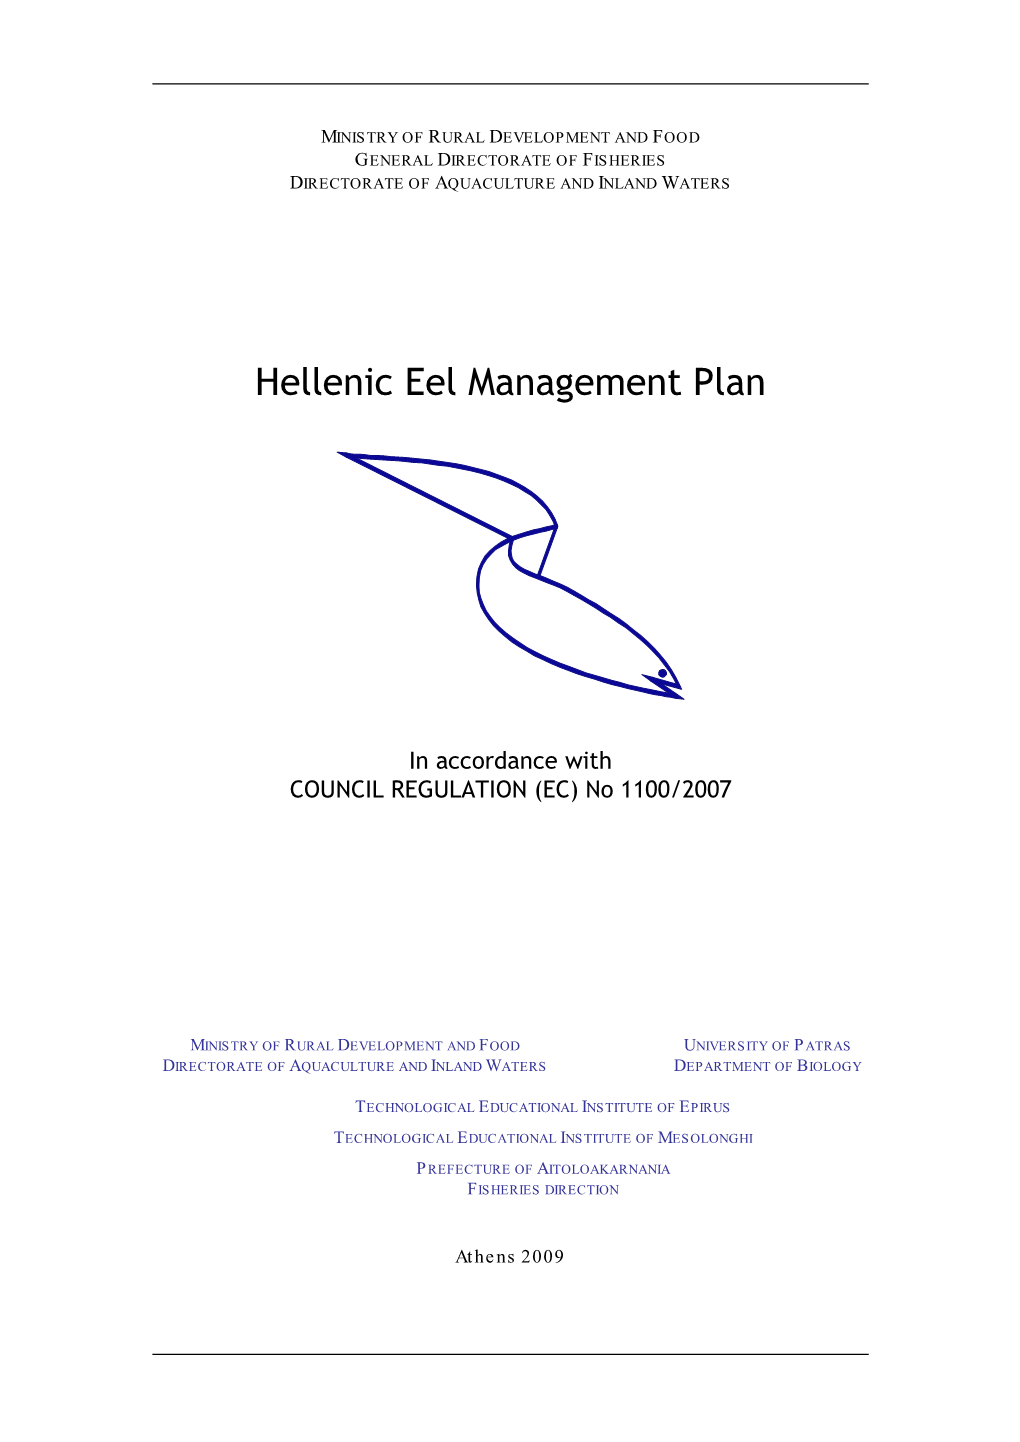 Hellenic Eel Management Plan